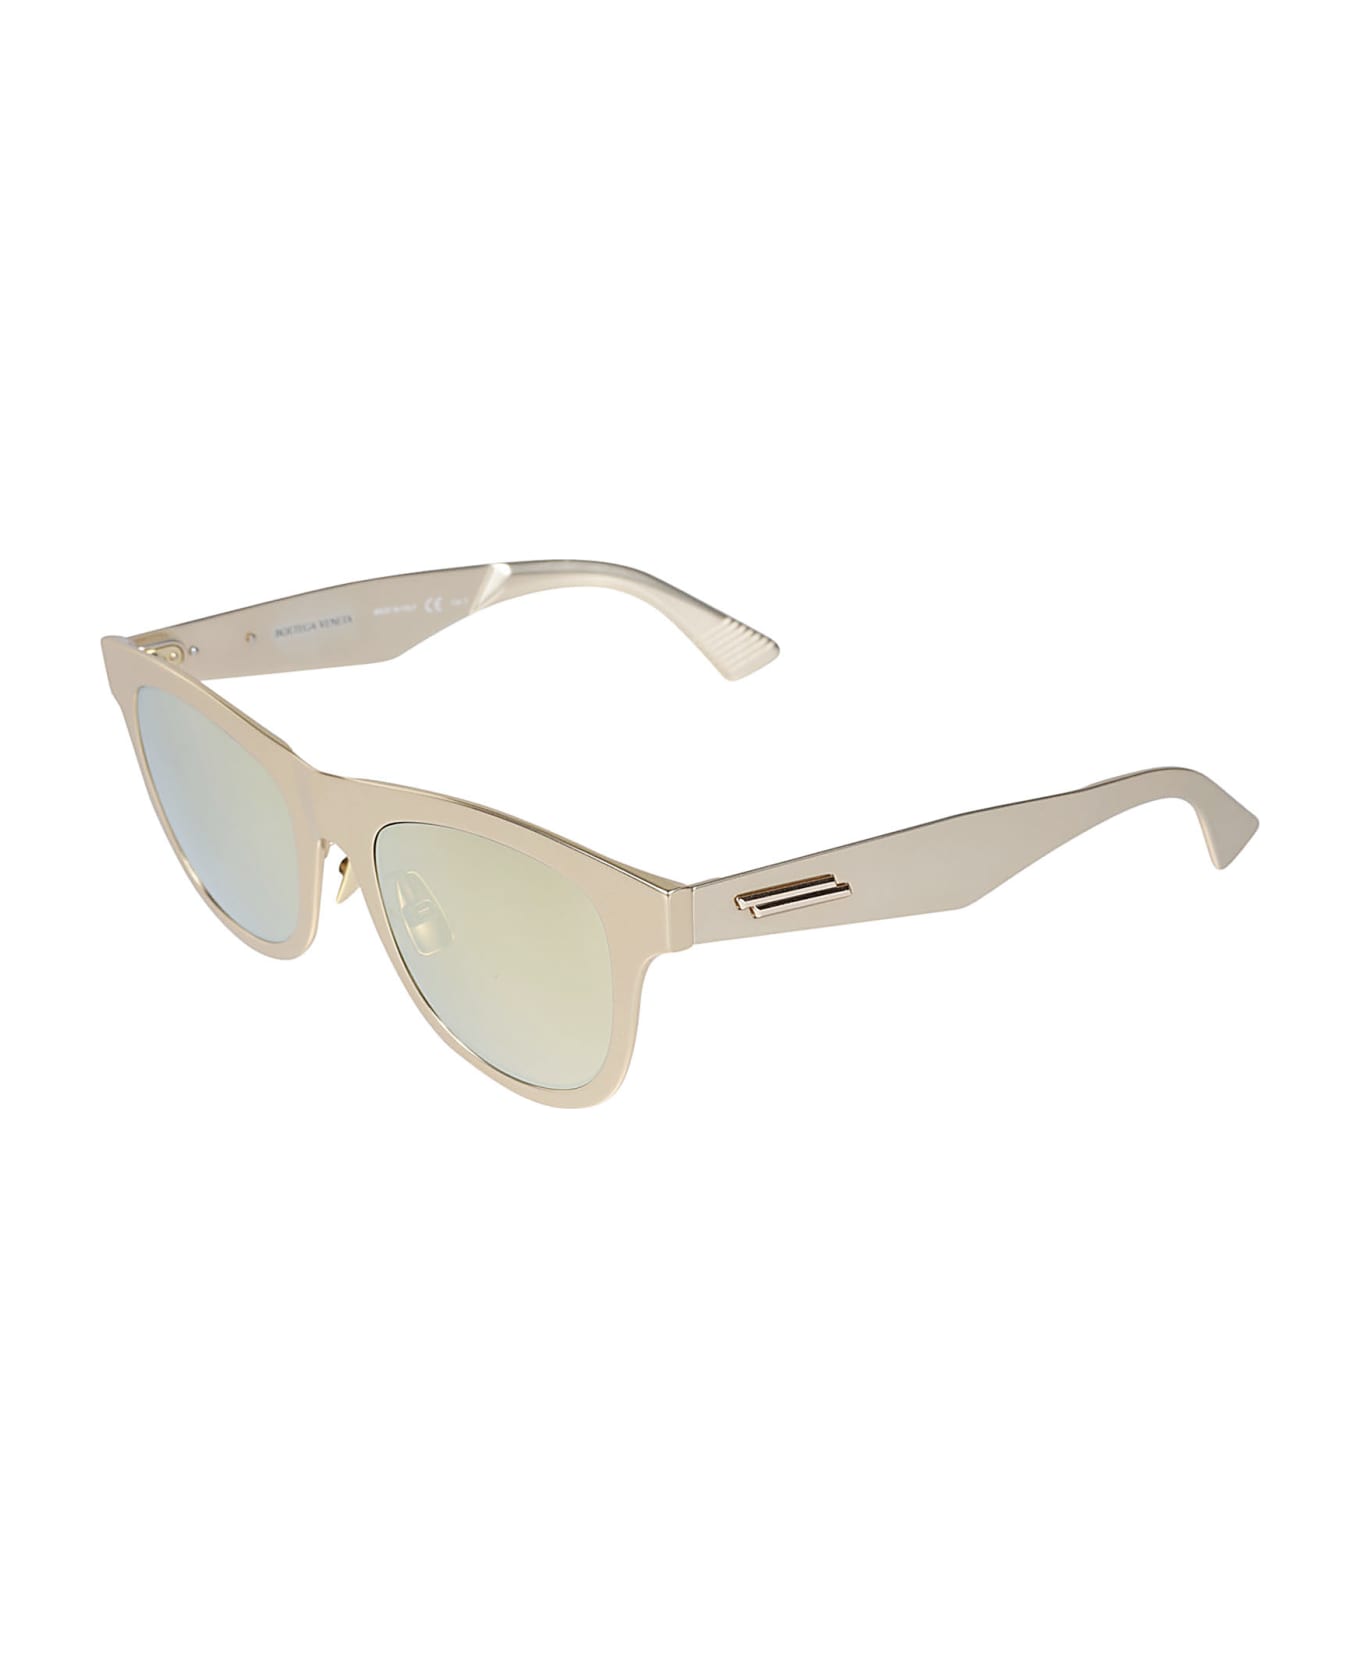 Bottega Veneta Eyewear Wayfarer Sunglasses - Gold